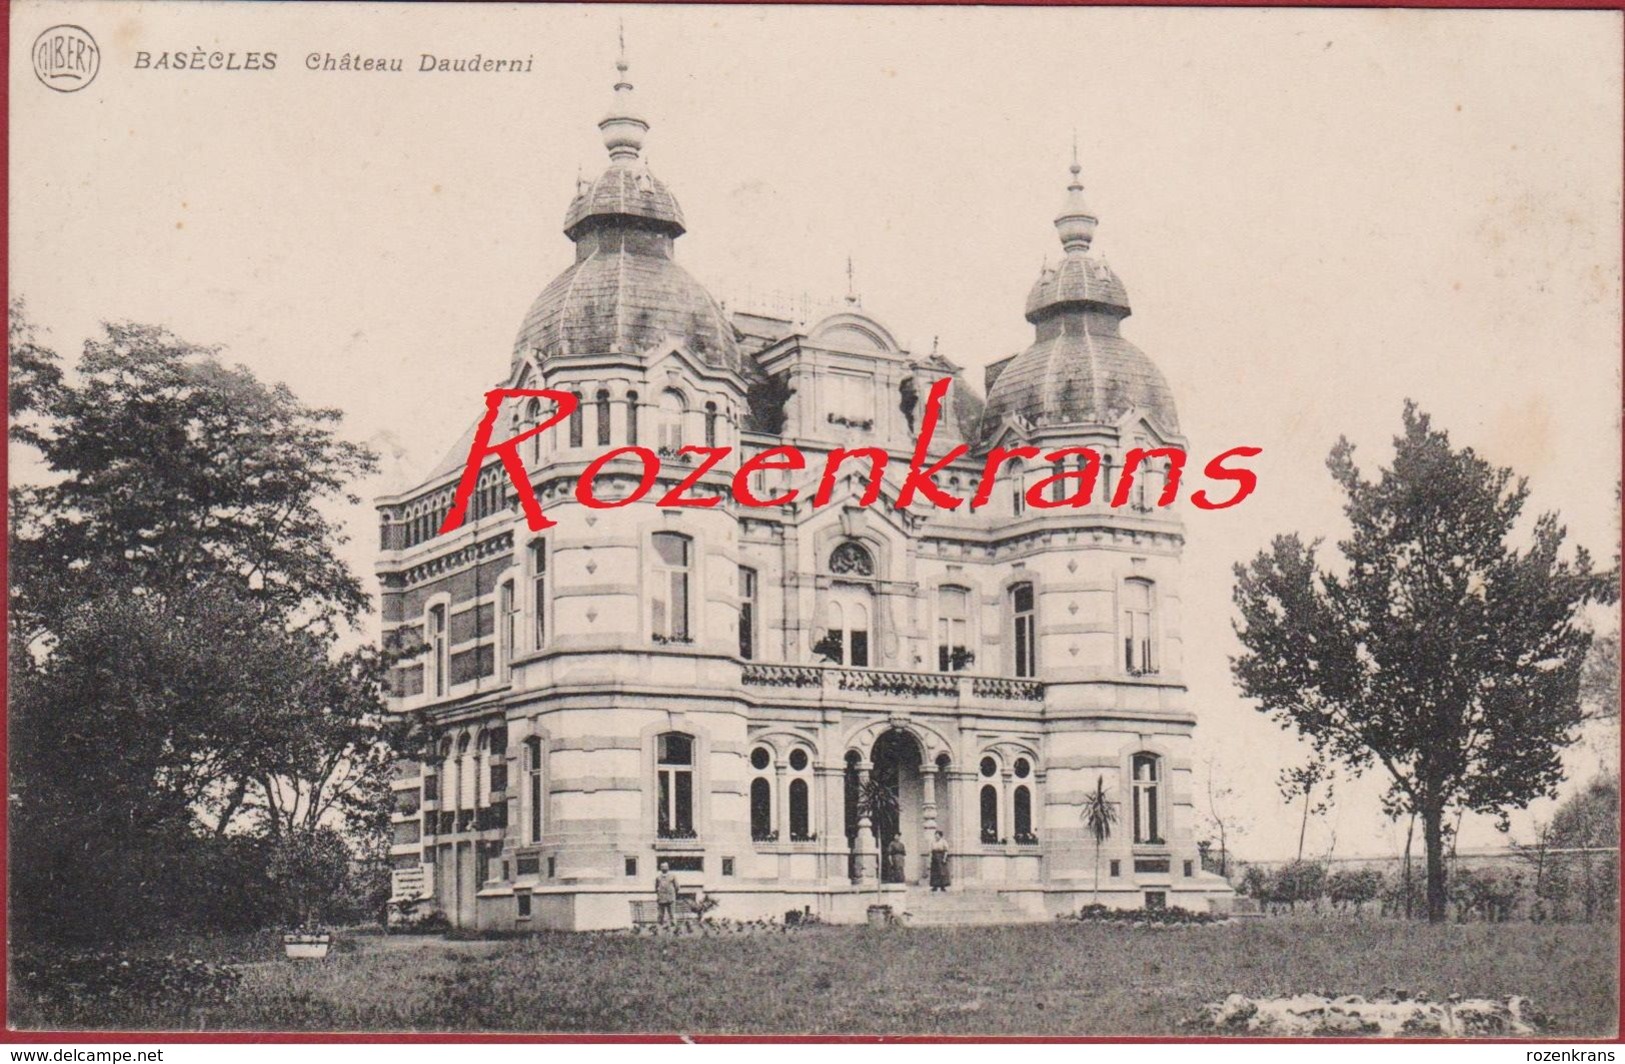 Basecles Chateau Dauderni Hainaut Henegouwen Beloeil 1914 Liefdesbrief Lettre D' Amour Love Letter (En Bon état) - Belöil